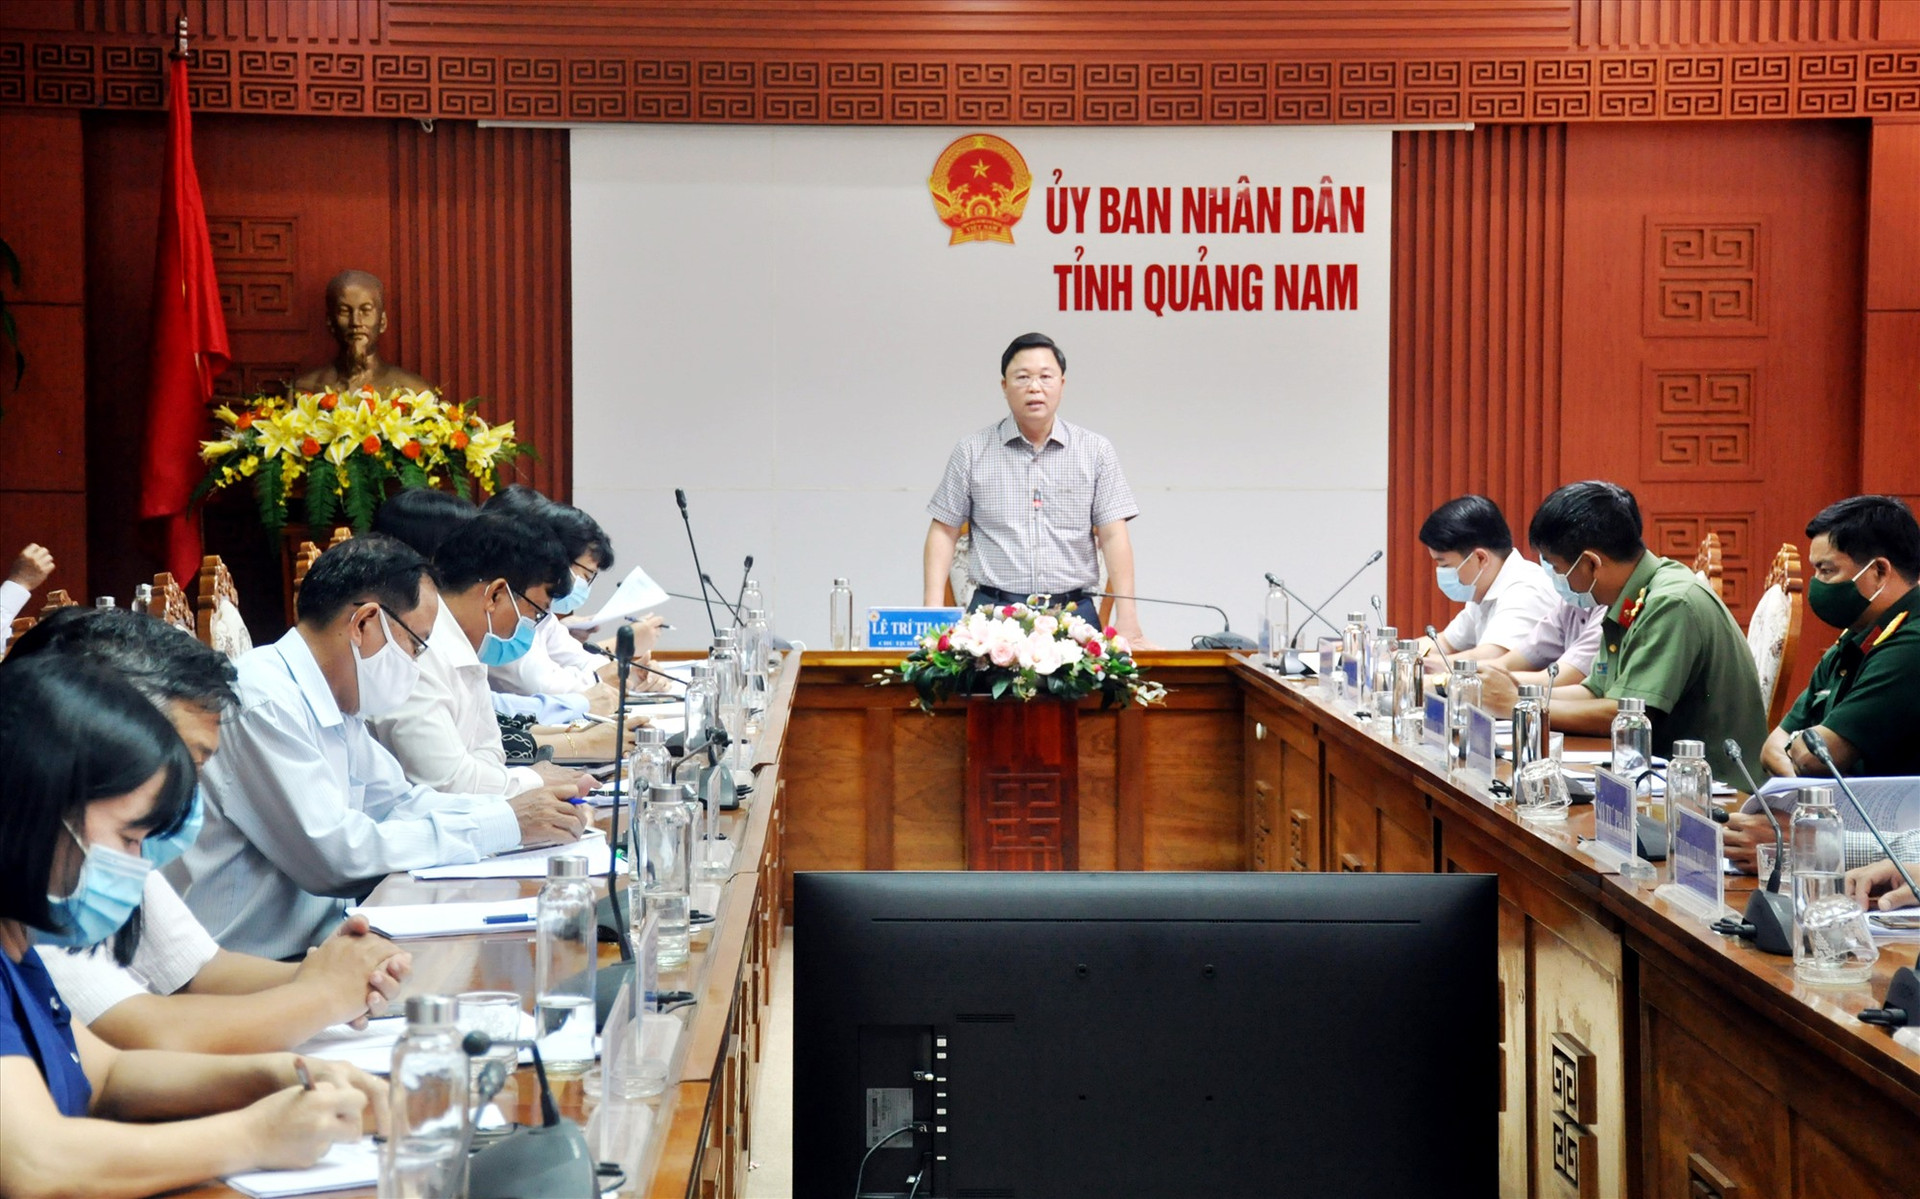 Chủ tịch UBND tỉnh Lê Trí Thanh chủ trì cuộc họp lấy ý kiến góp ý vào dự thảo đánh giá tổng kết 5 năm thực hiện Nghị quyết 08 của Tỉnh ủy và dự thảo nghị quyết phát triển du lịch Quảng Nam đến năm 2025, định hướng đến năm 2030. Ảnh: N.Đ